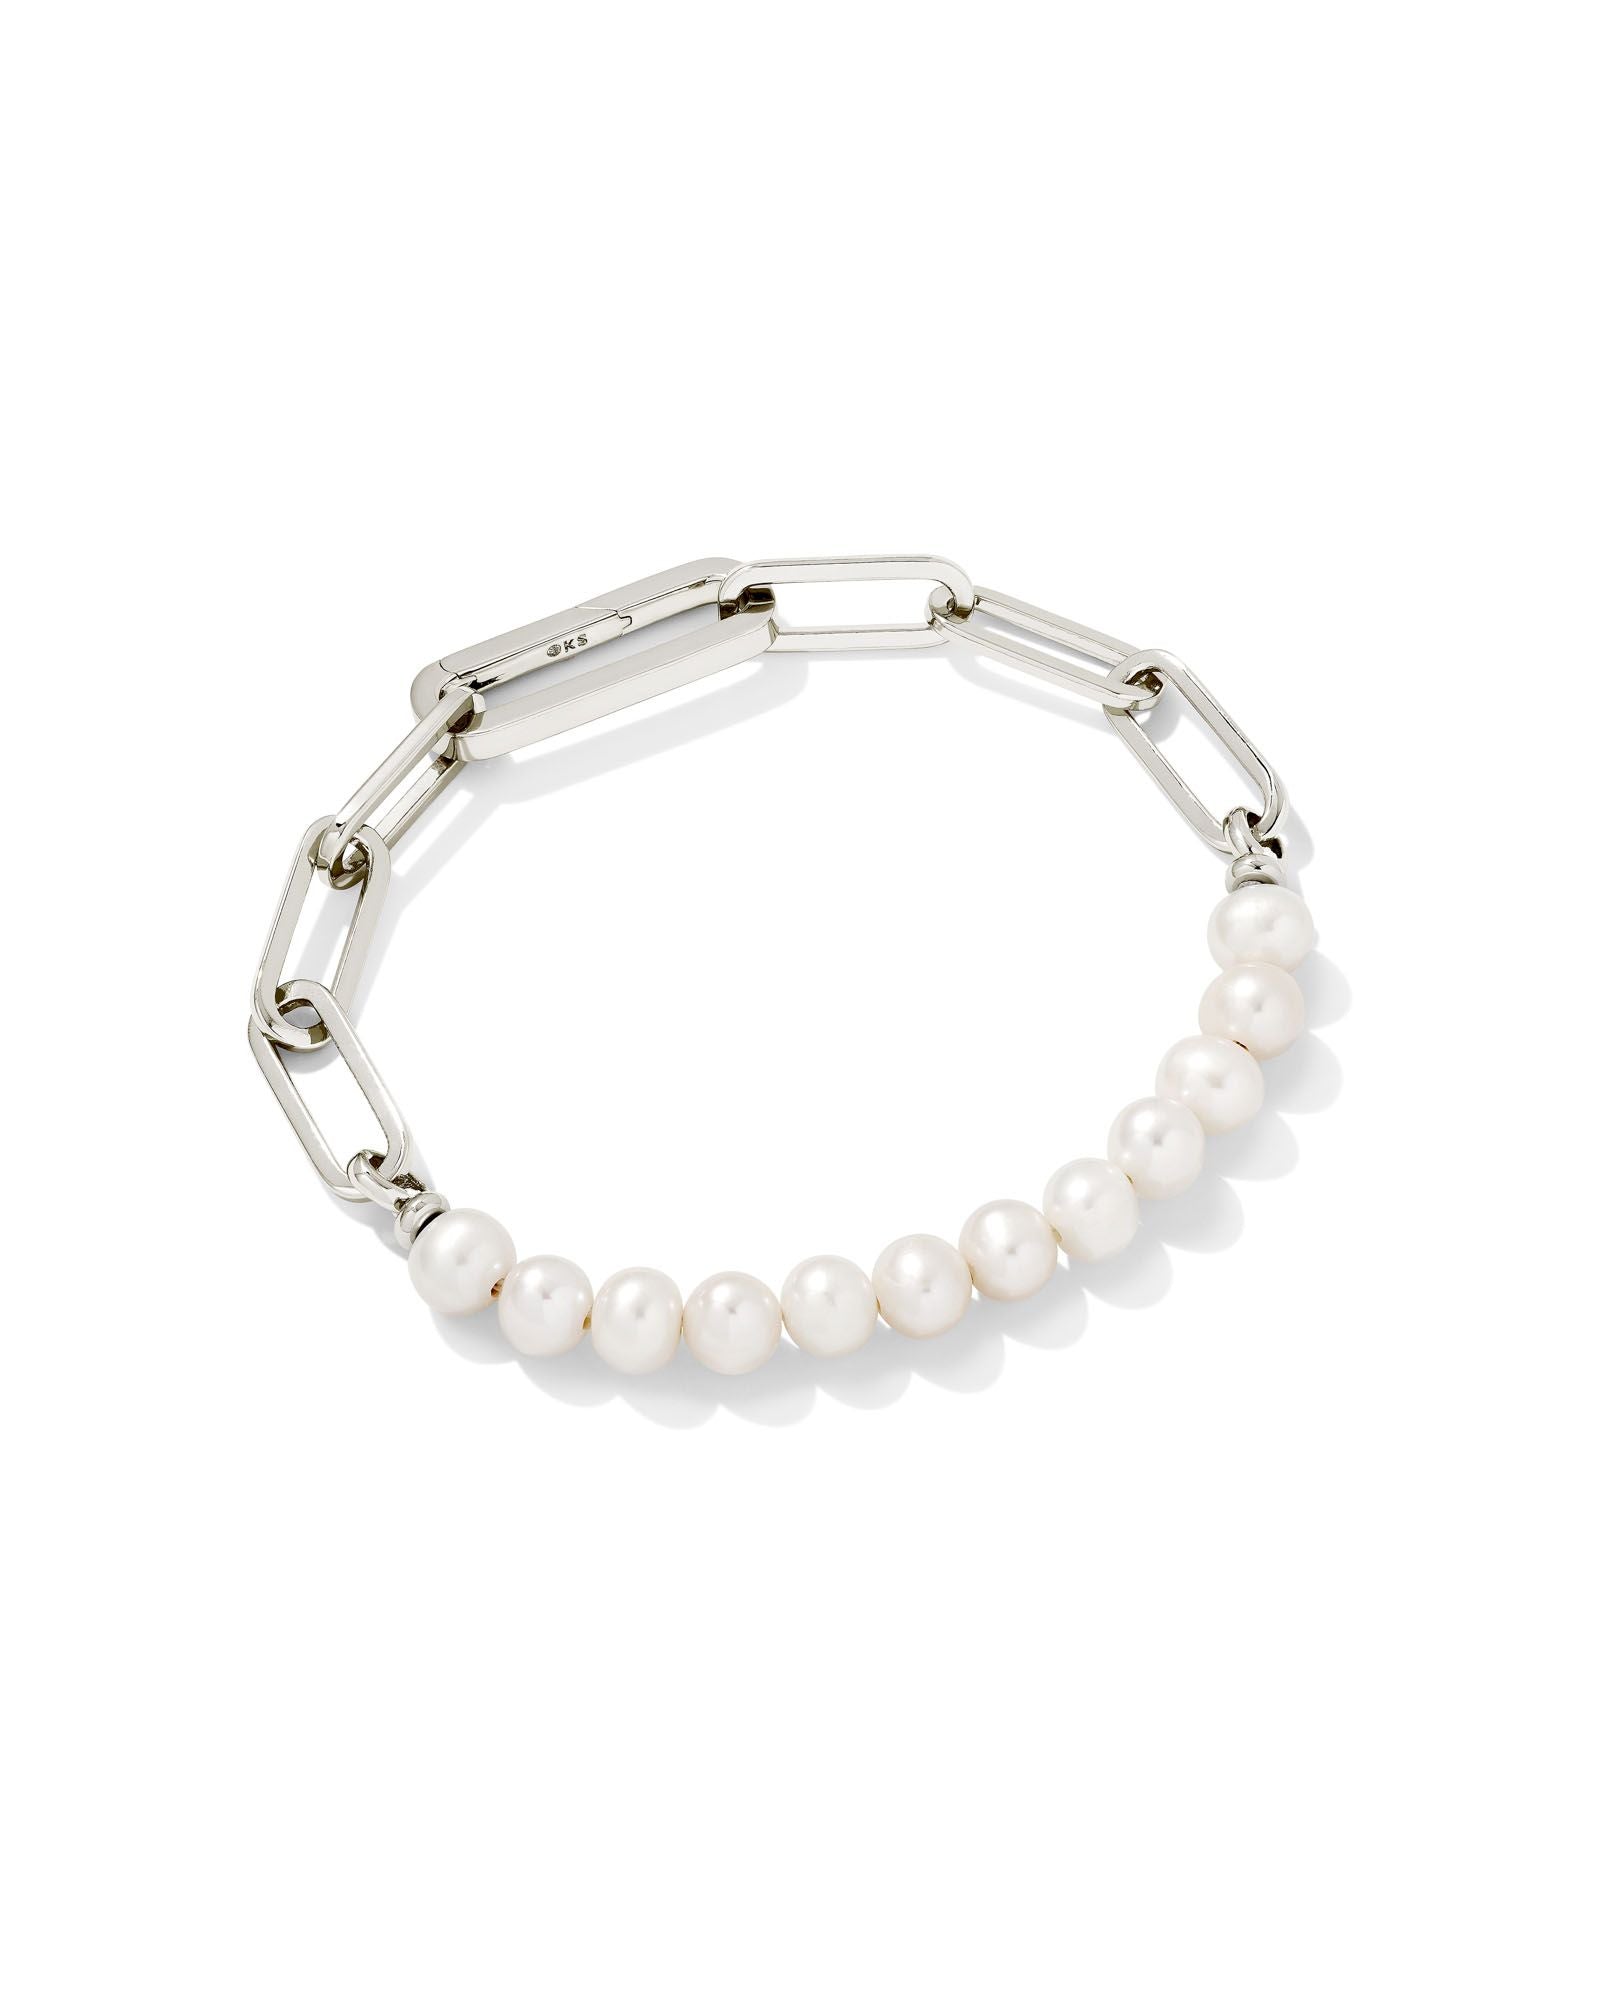 Ashton Half Chain Bracelet in White Pearl Silver